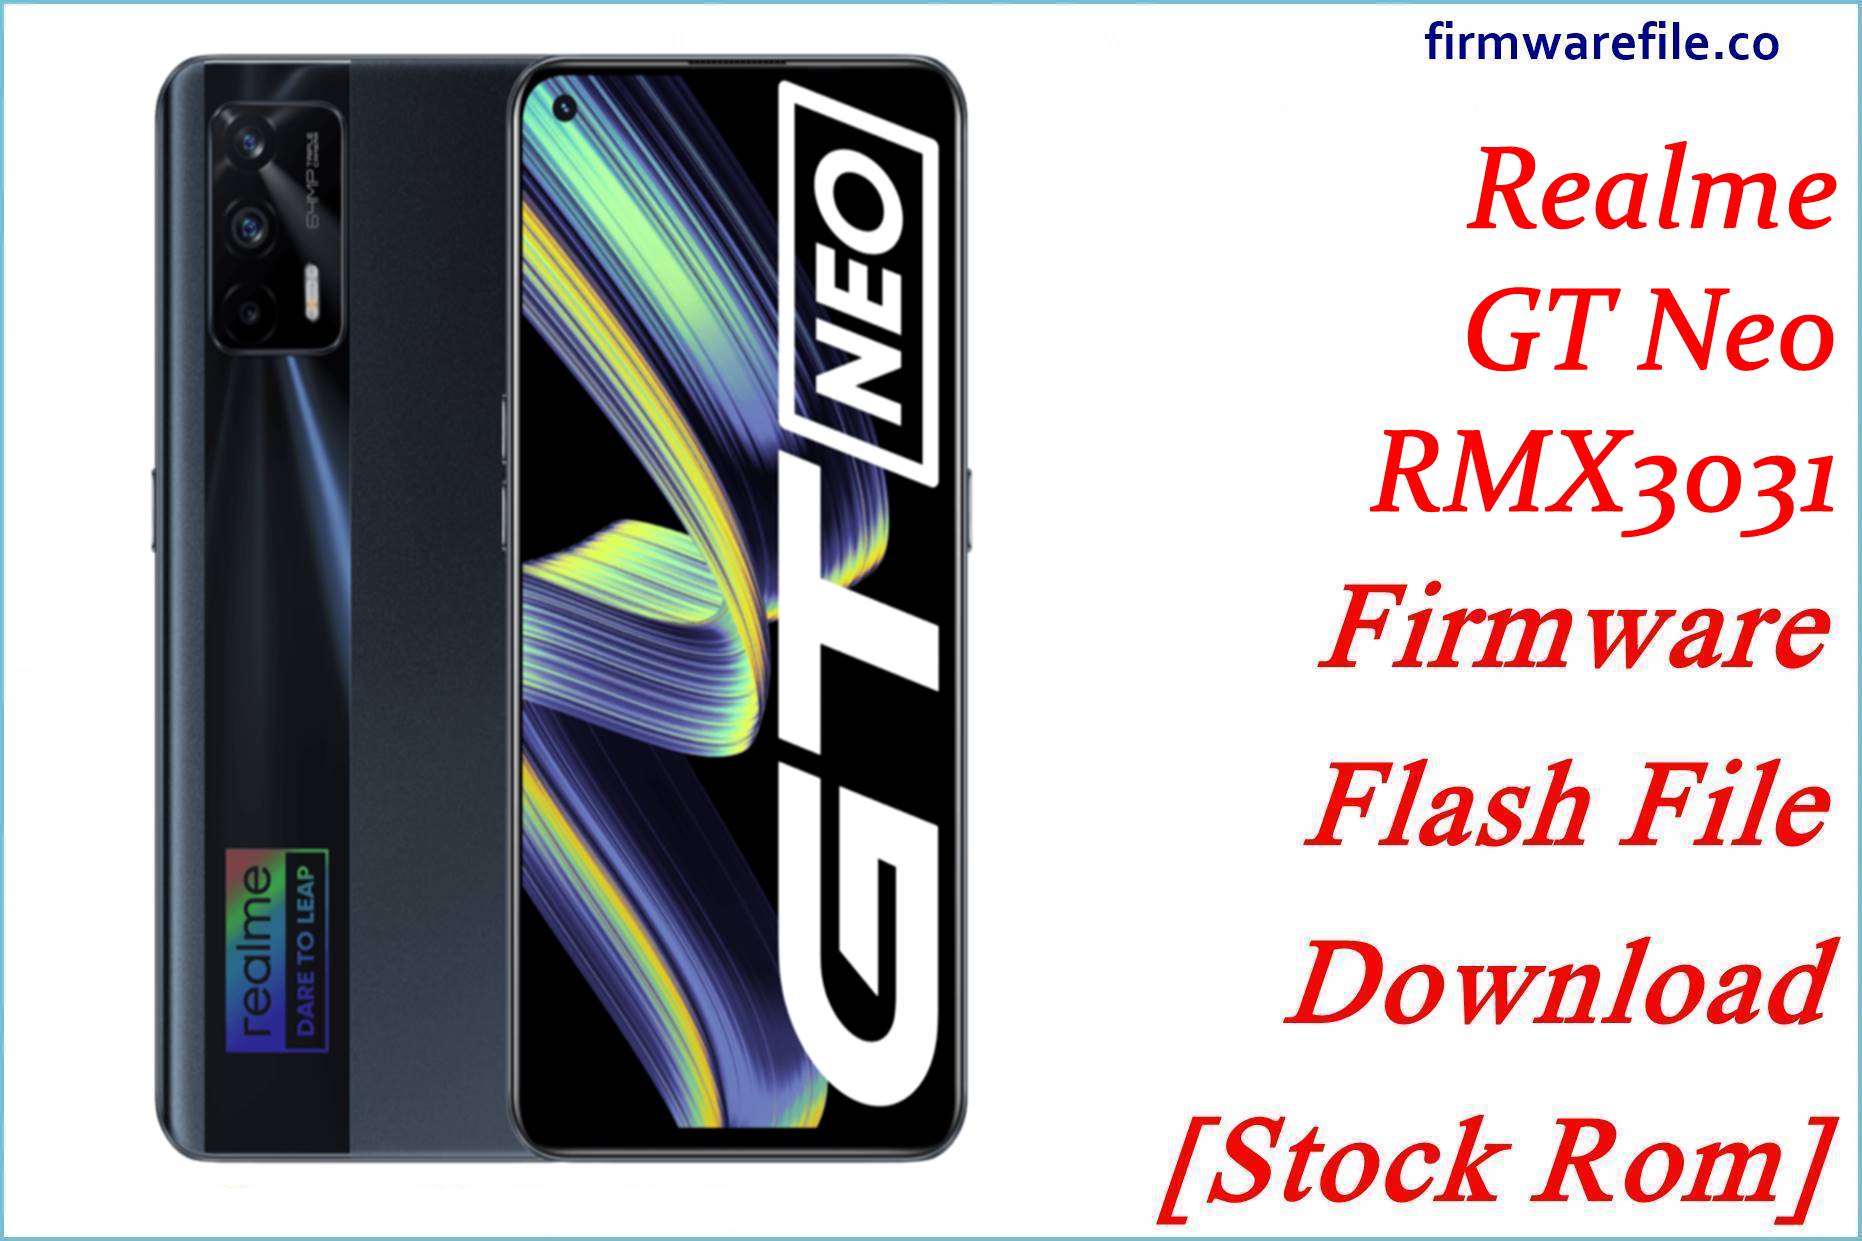 Realme GT Neo RMX3031